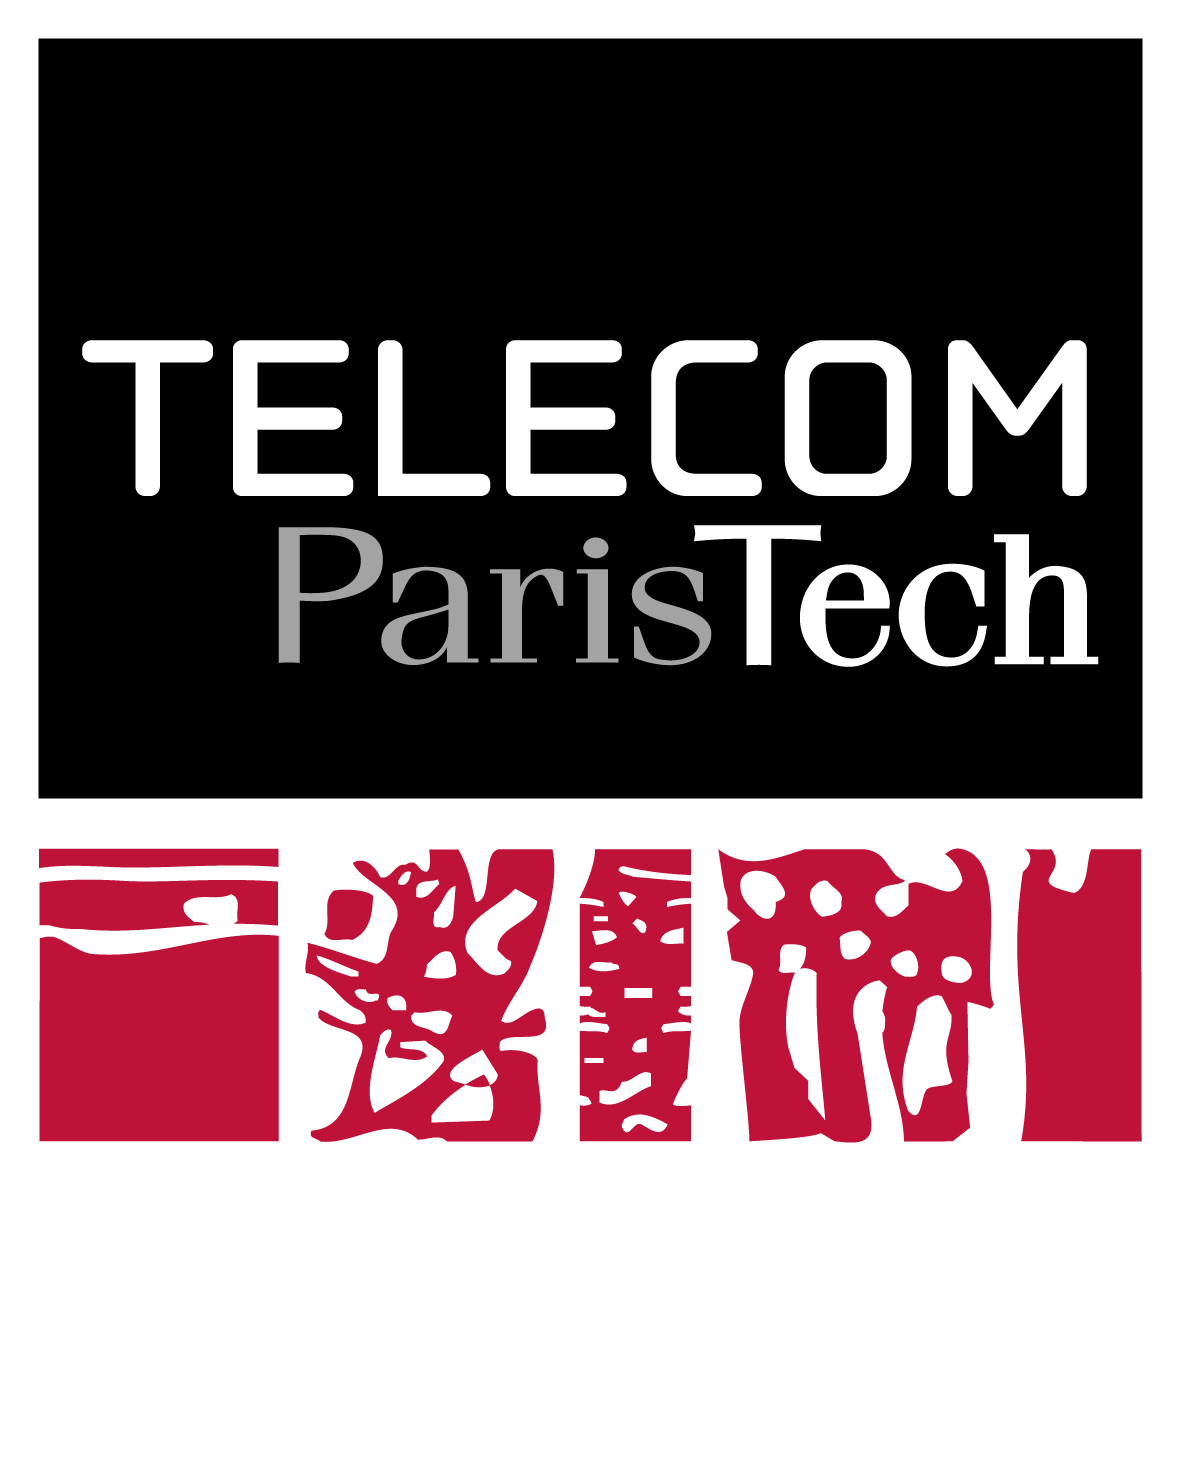 telecom paris tech logo